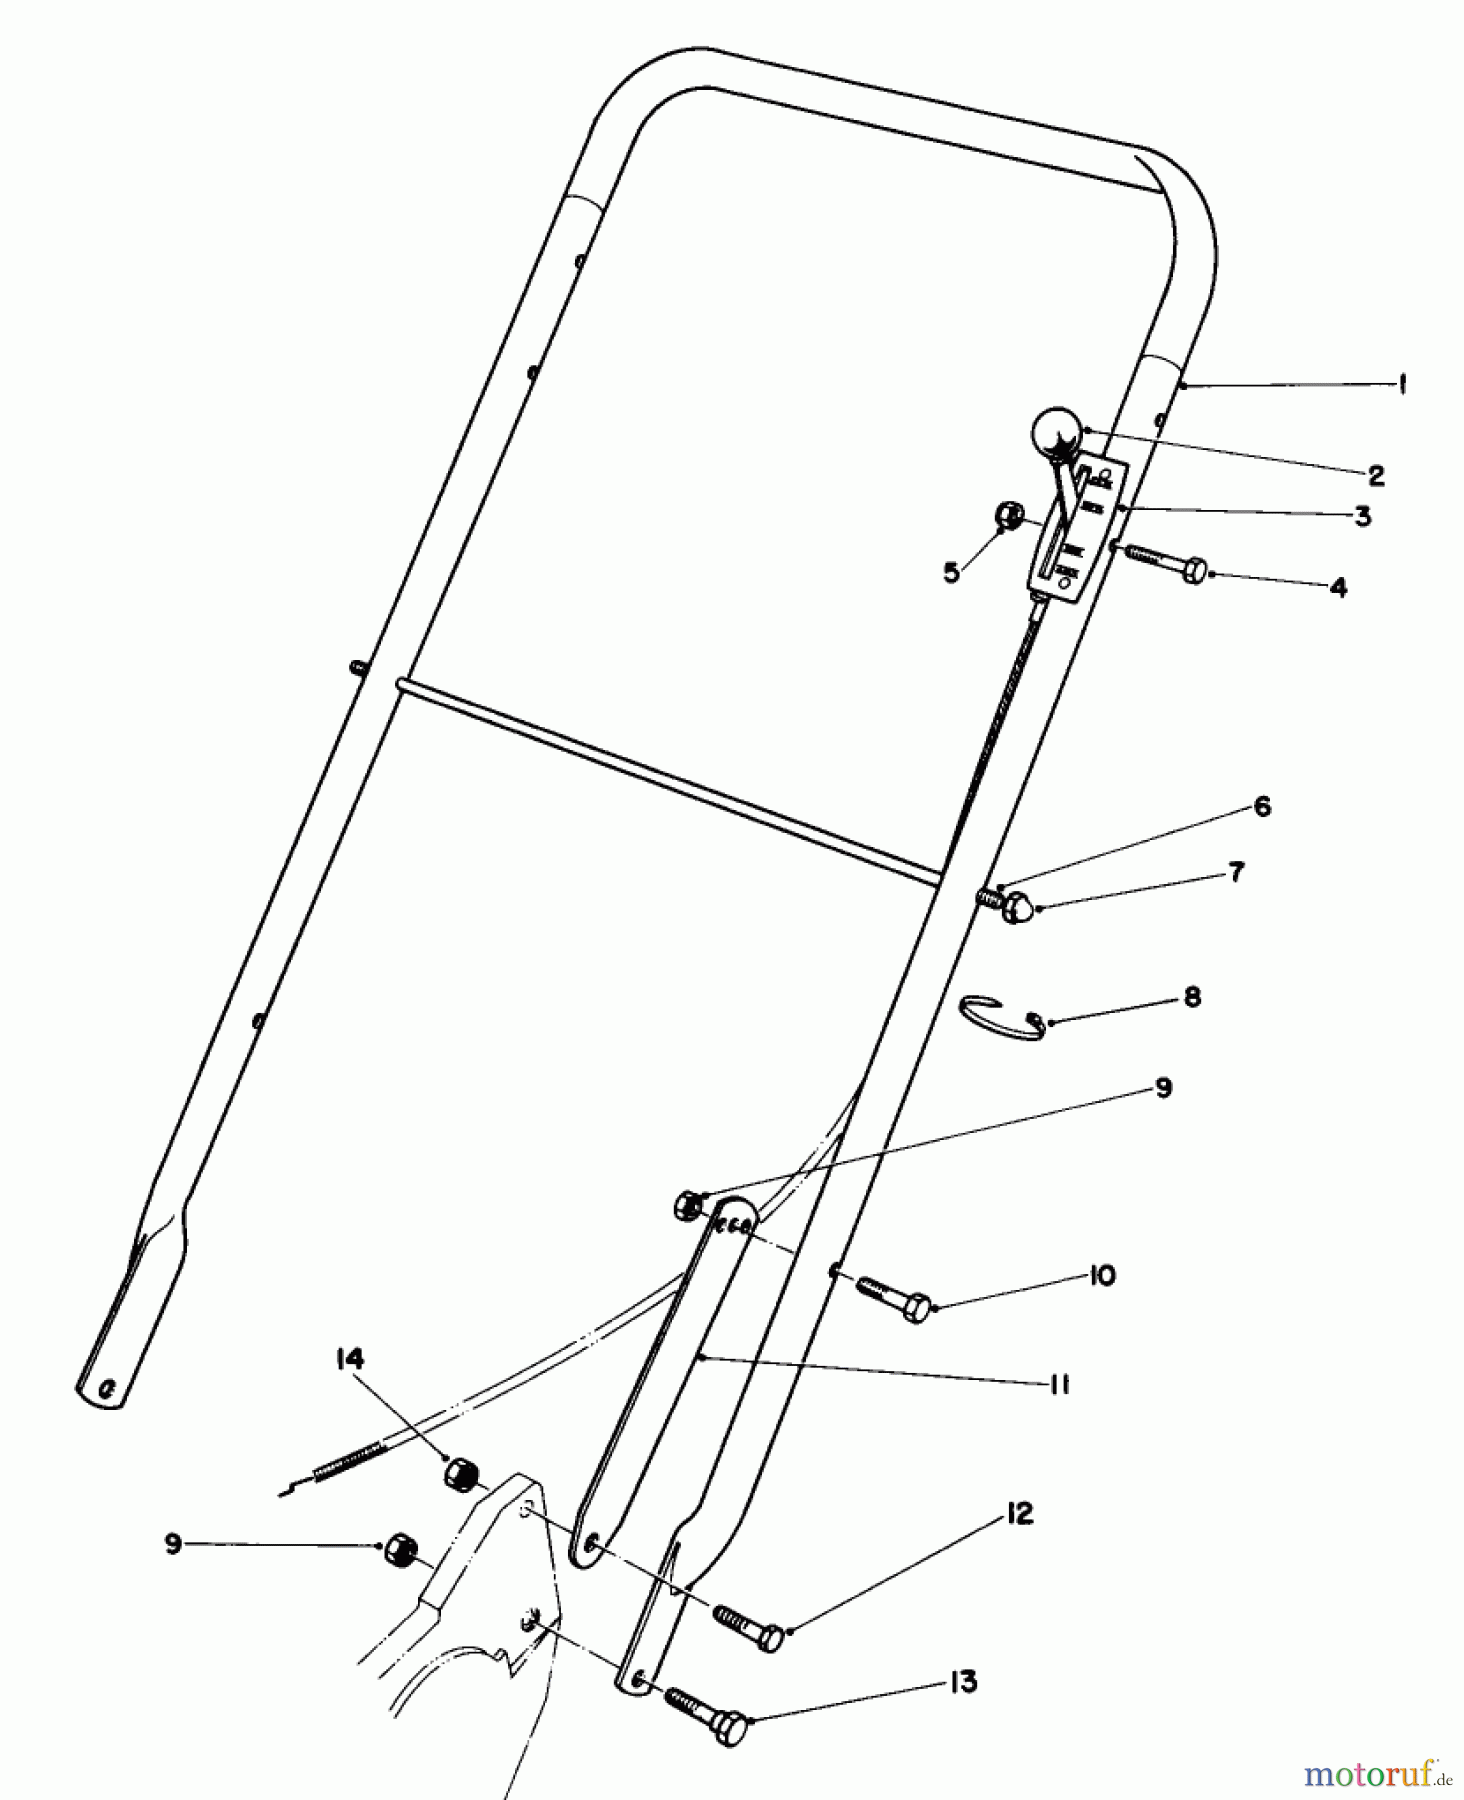  Toro Neu Mowers, Walk-Behind Seite 2 22015 - Toro Lawnmower, 1986 (6000001-6999999) HANDLE ASSEMBLY (MODEL 22015)